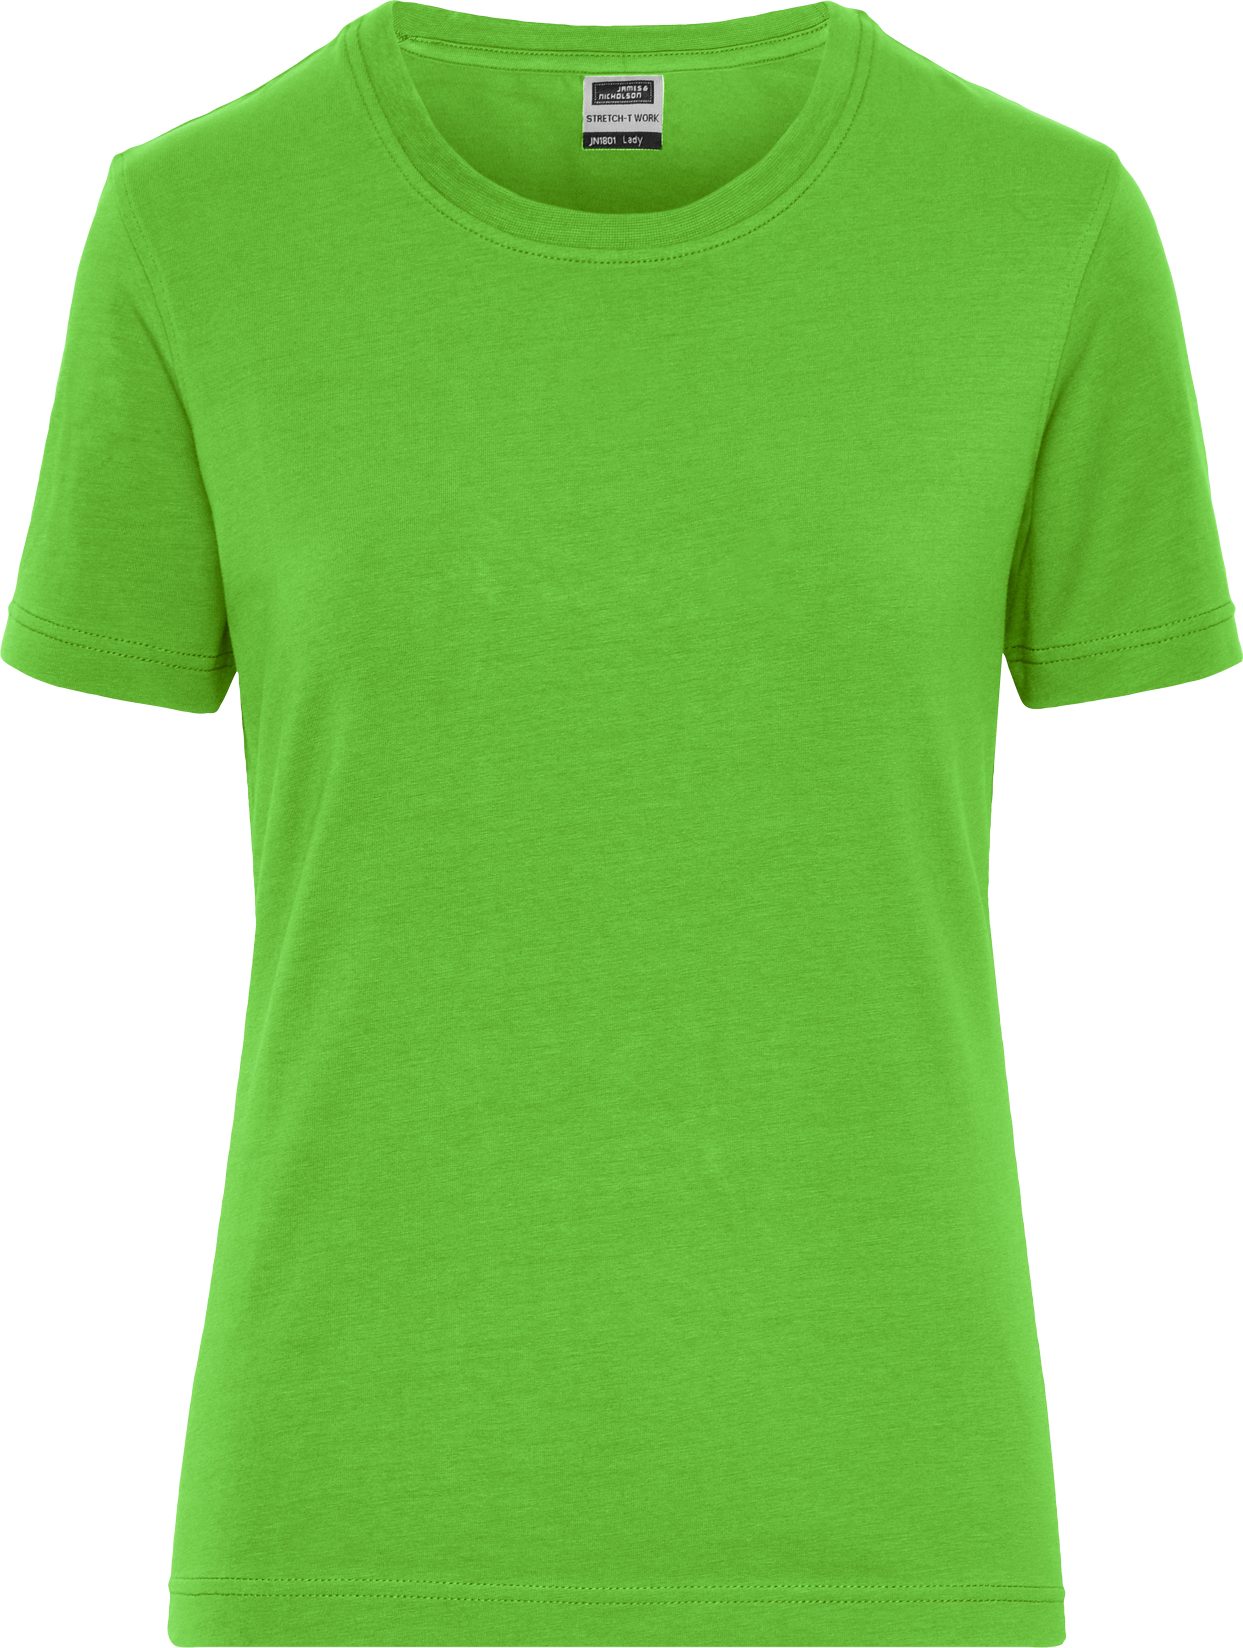 James & Nicholson T-Shirt Tailliertes BIO-Baumwoll Damenshirt mit Elasthan JN1801 (Spar-Set, 5er-Pack) T-Shirt aus weichem Elastic-Single-Jersey